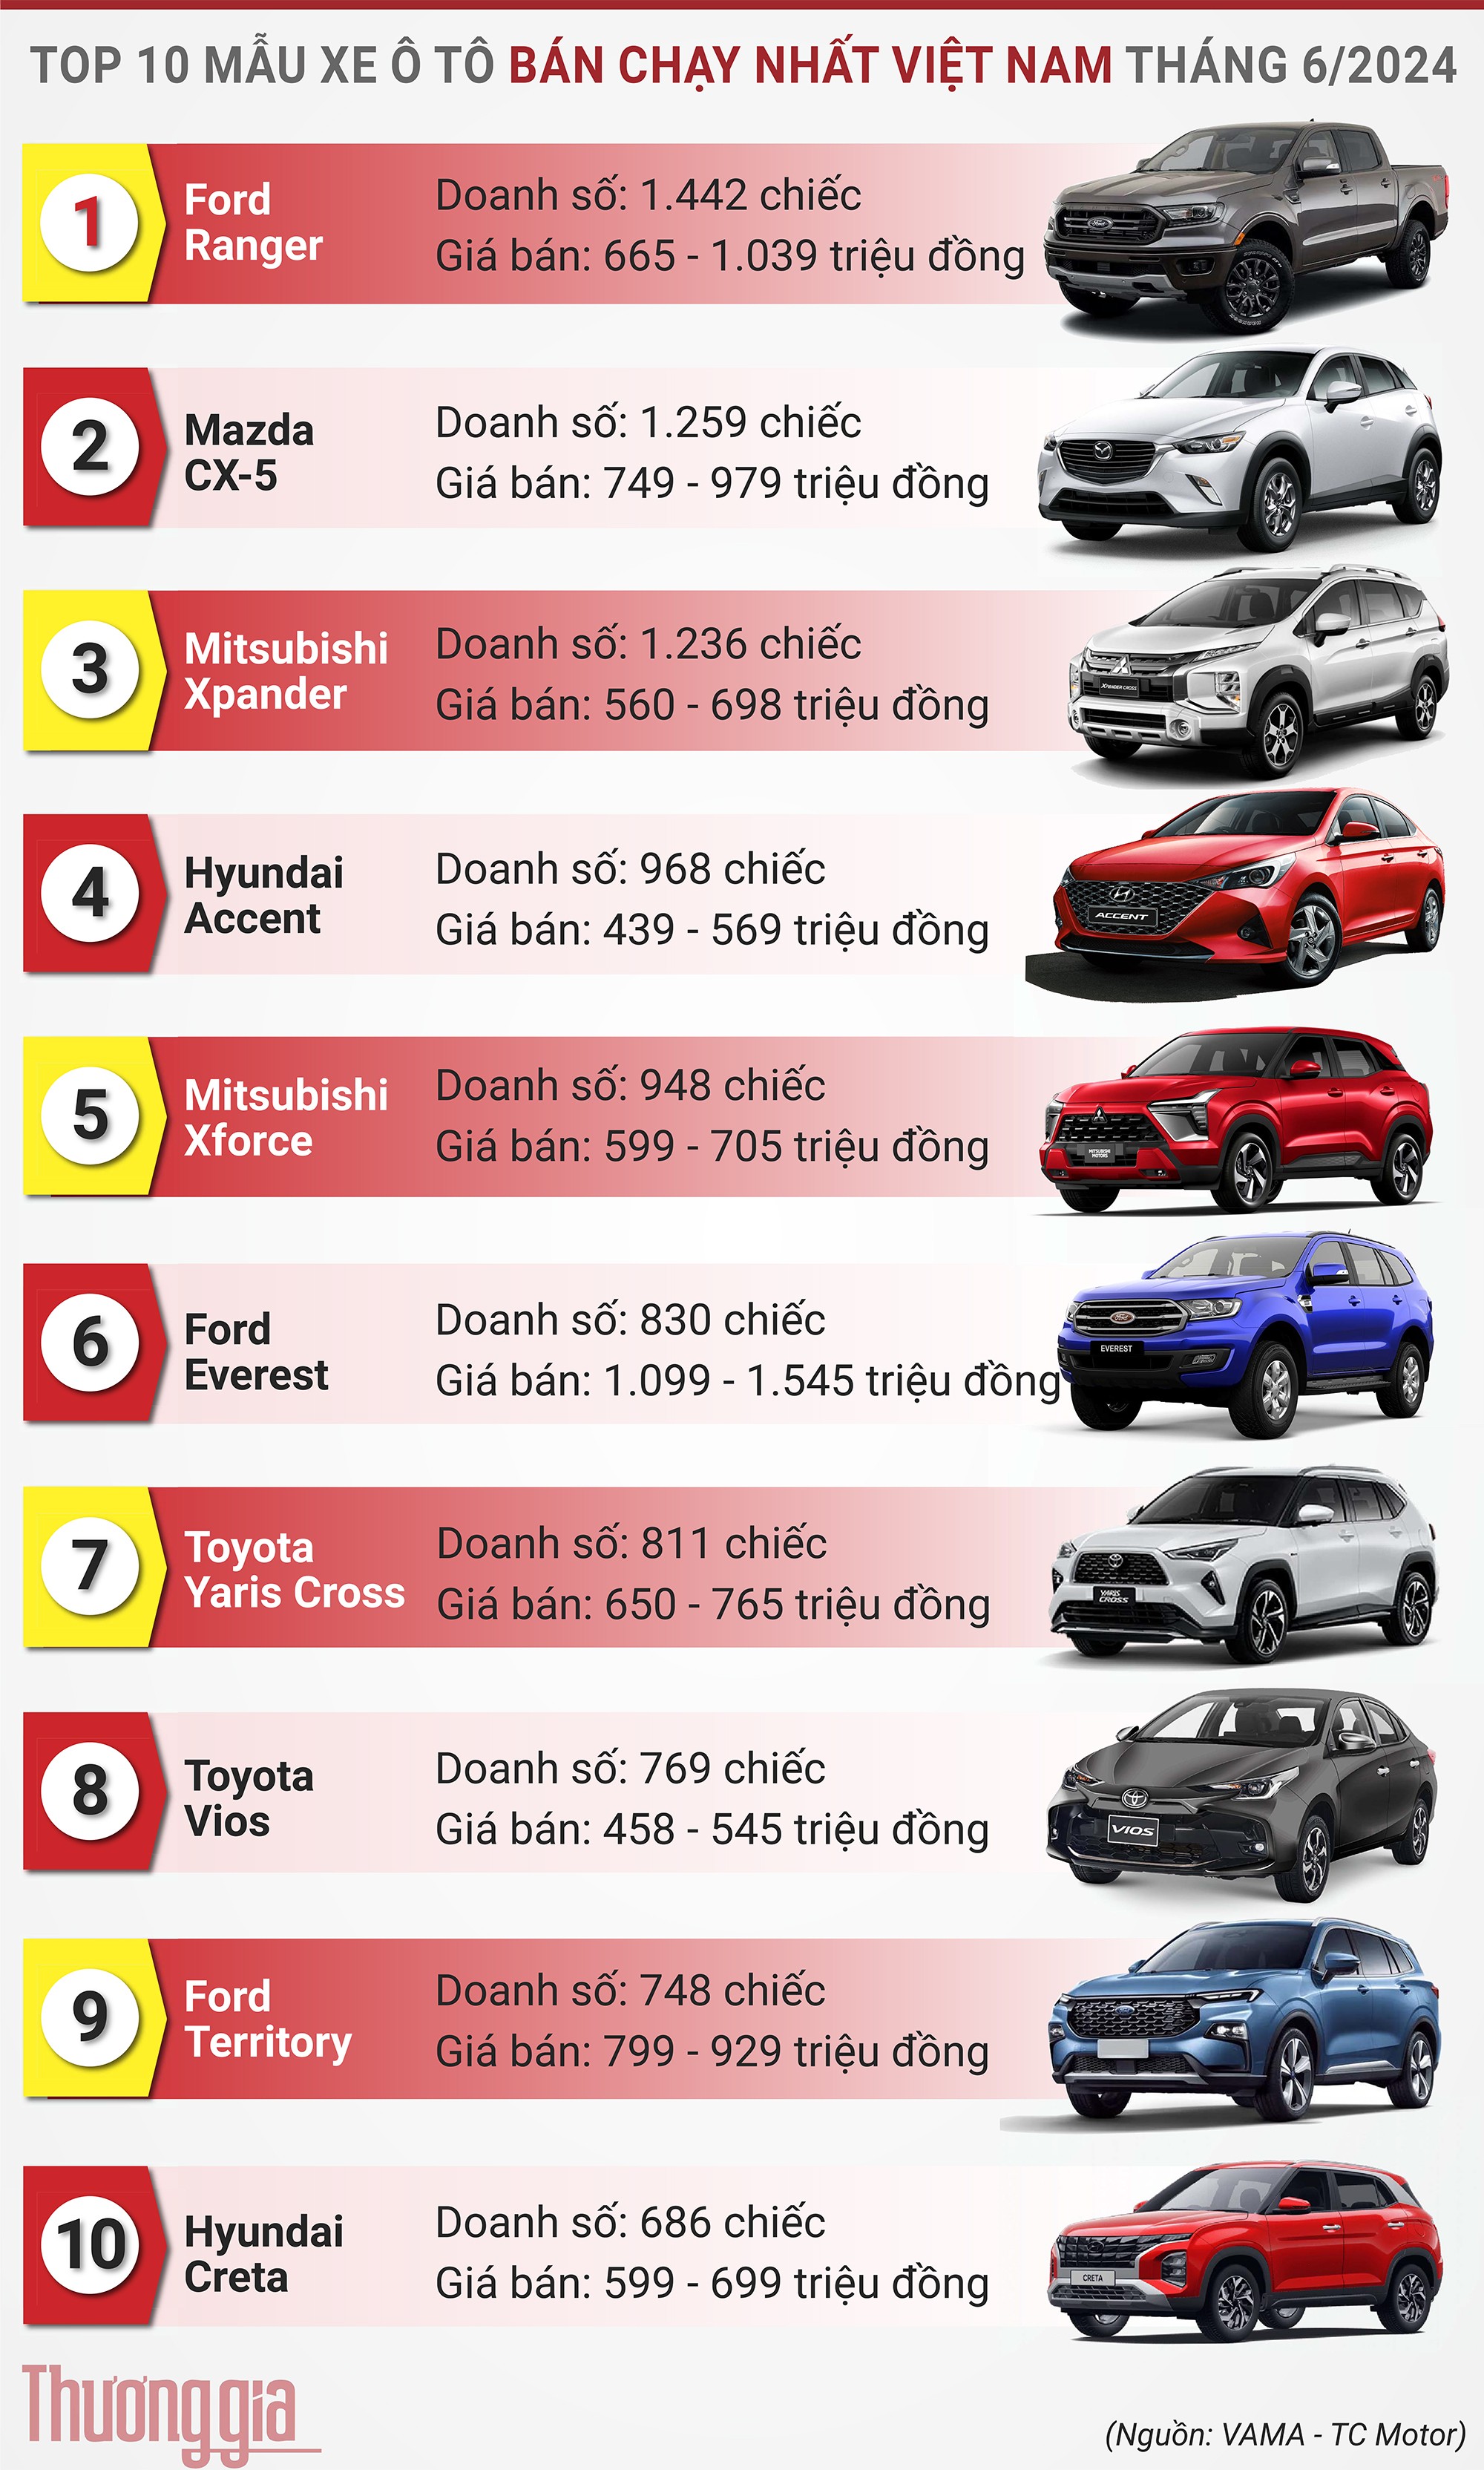 Bảng xếp hạng top 10 ô  tô bánh chạy nhất tháng  6/2024 tại Việt Nam